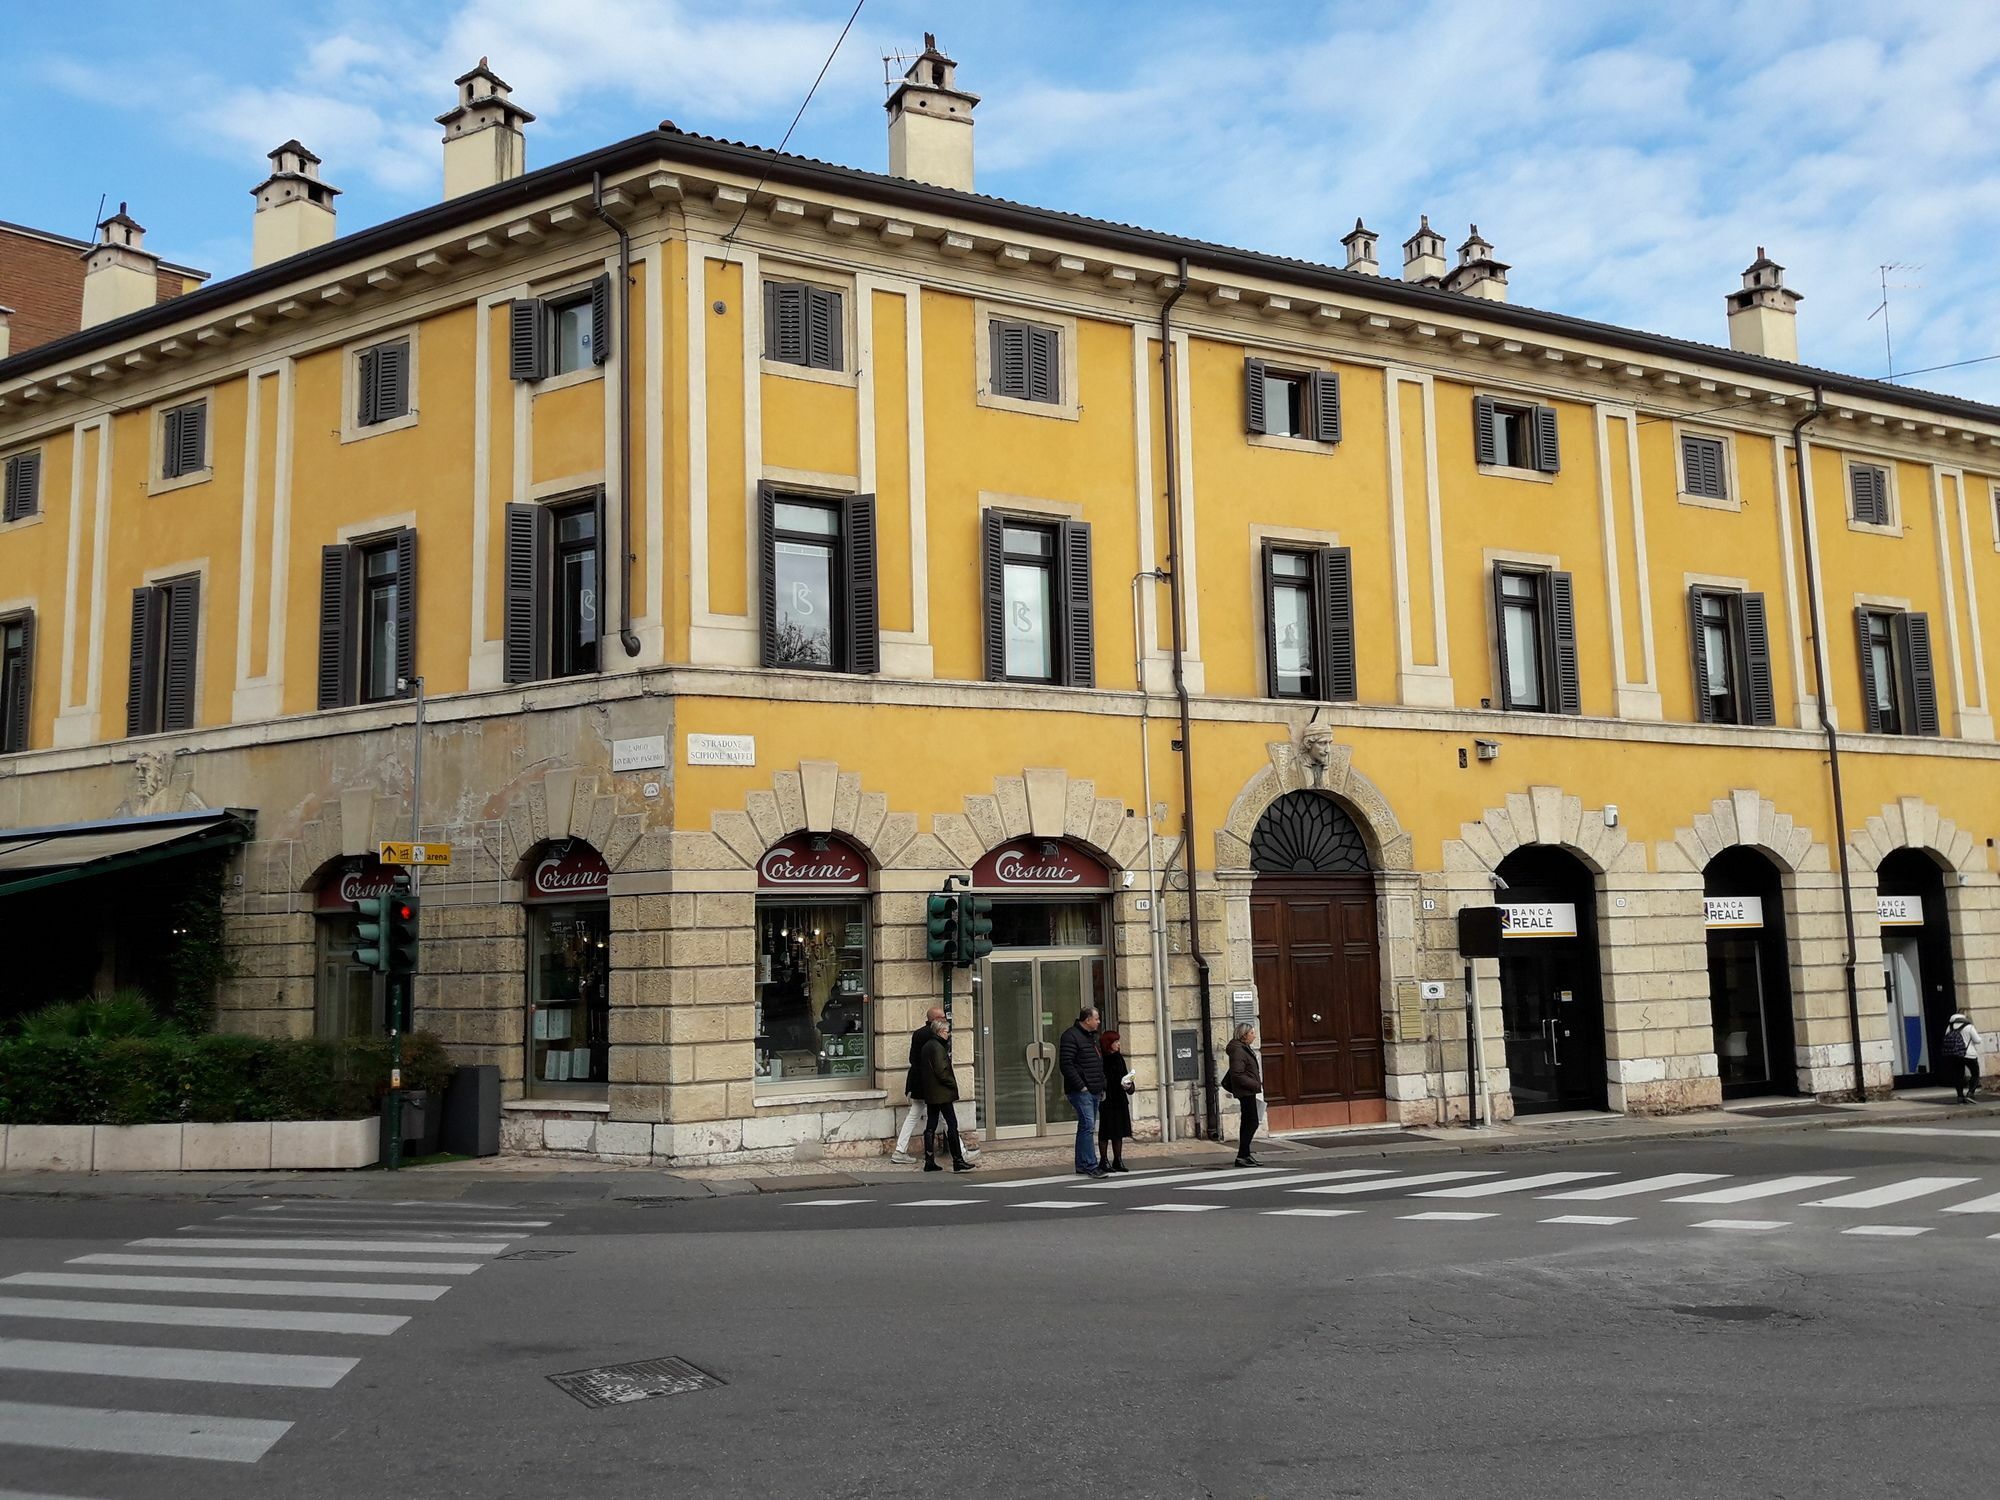 Accomodation Verona - City Centre Exterior foto